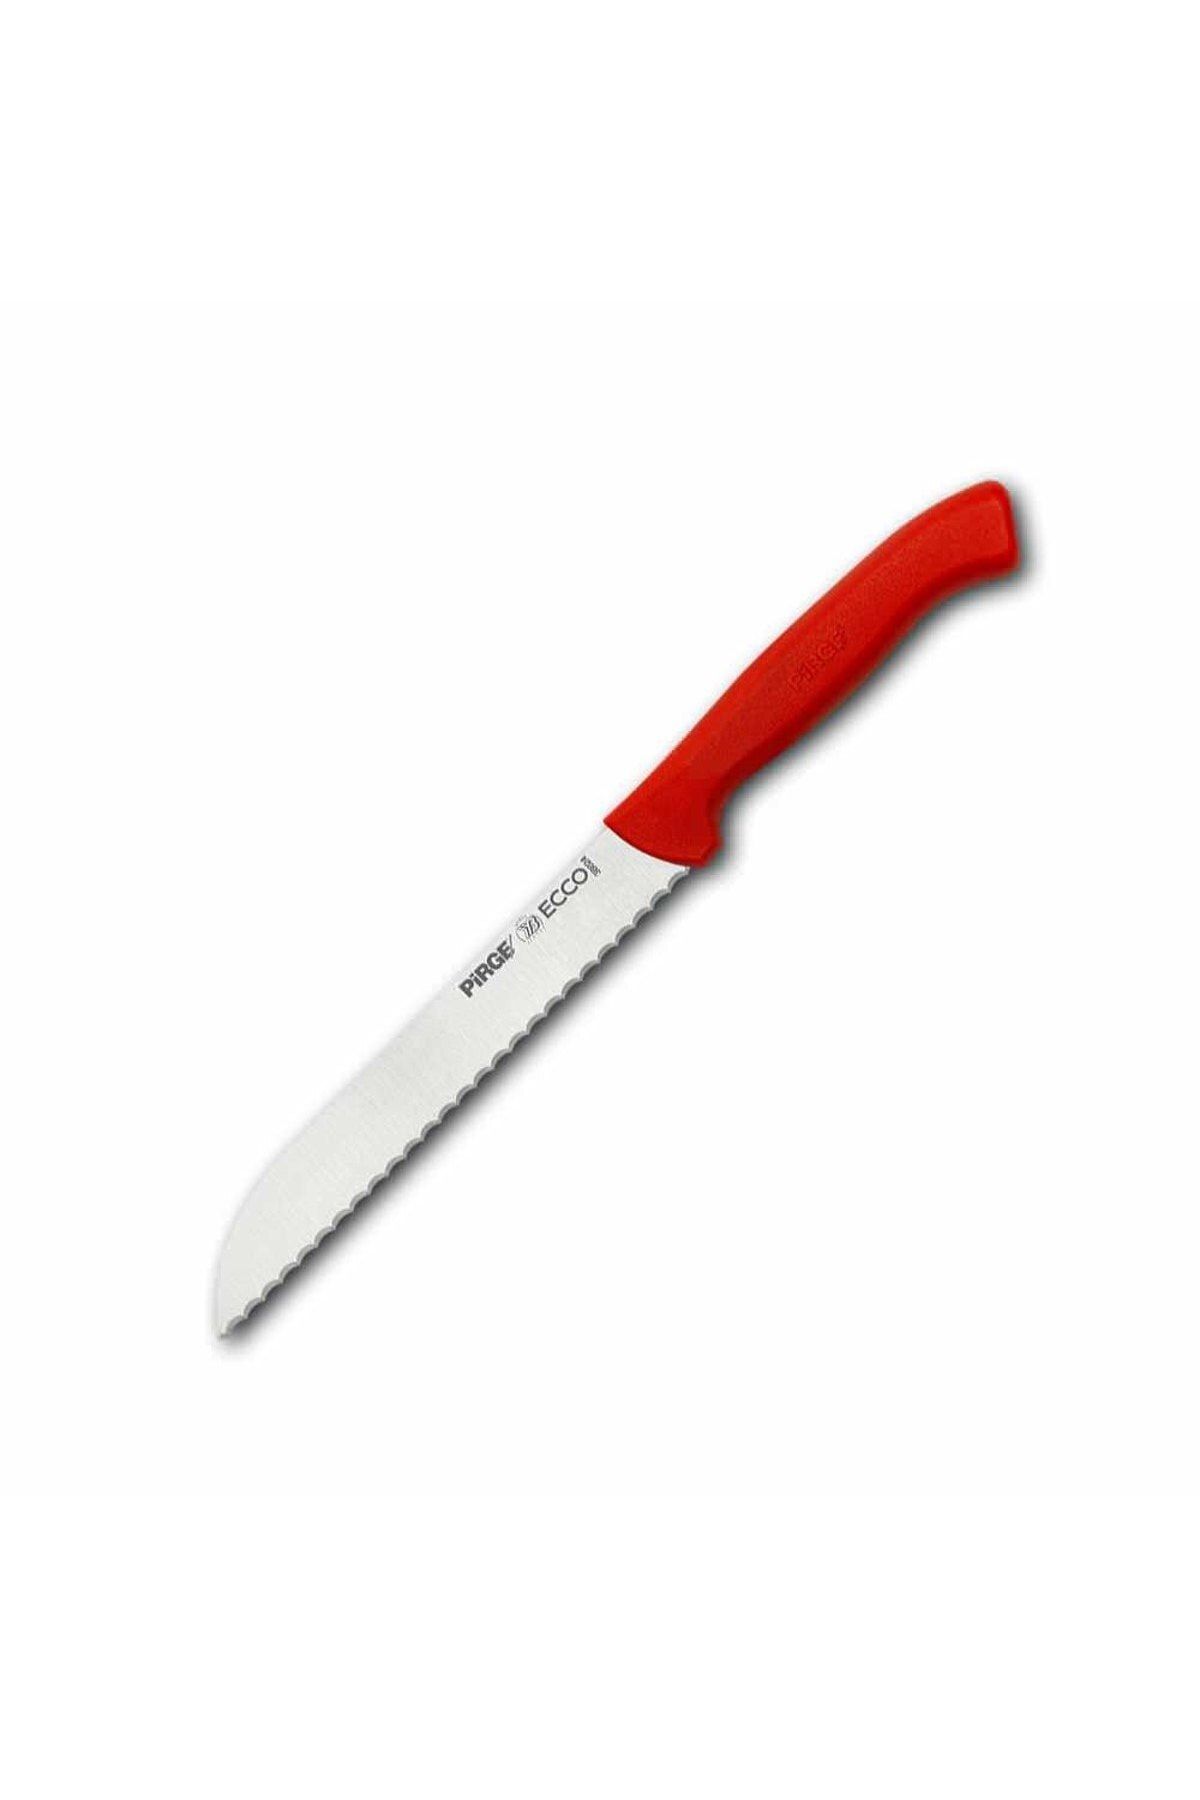 Pirge Ecco Ekmek Bıçağı Pro 17,5 Cm 38024 Siyah